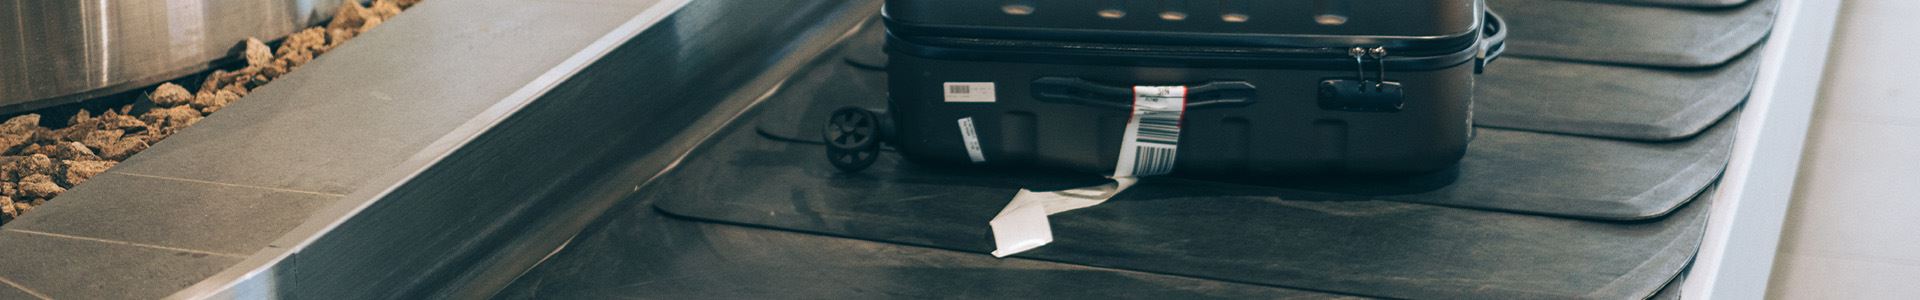 Изображение, состоящее из черного чемодана для ручной клади с верхней и боковой ручками и белой багажной биркой на боковой ручке, лежащего на карусели для багажа в аэропорту.